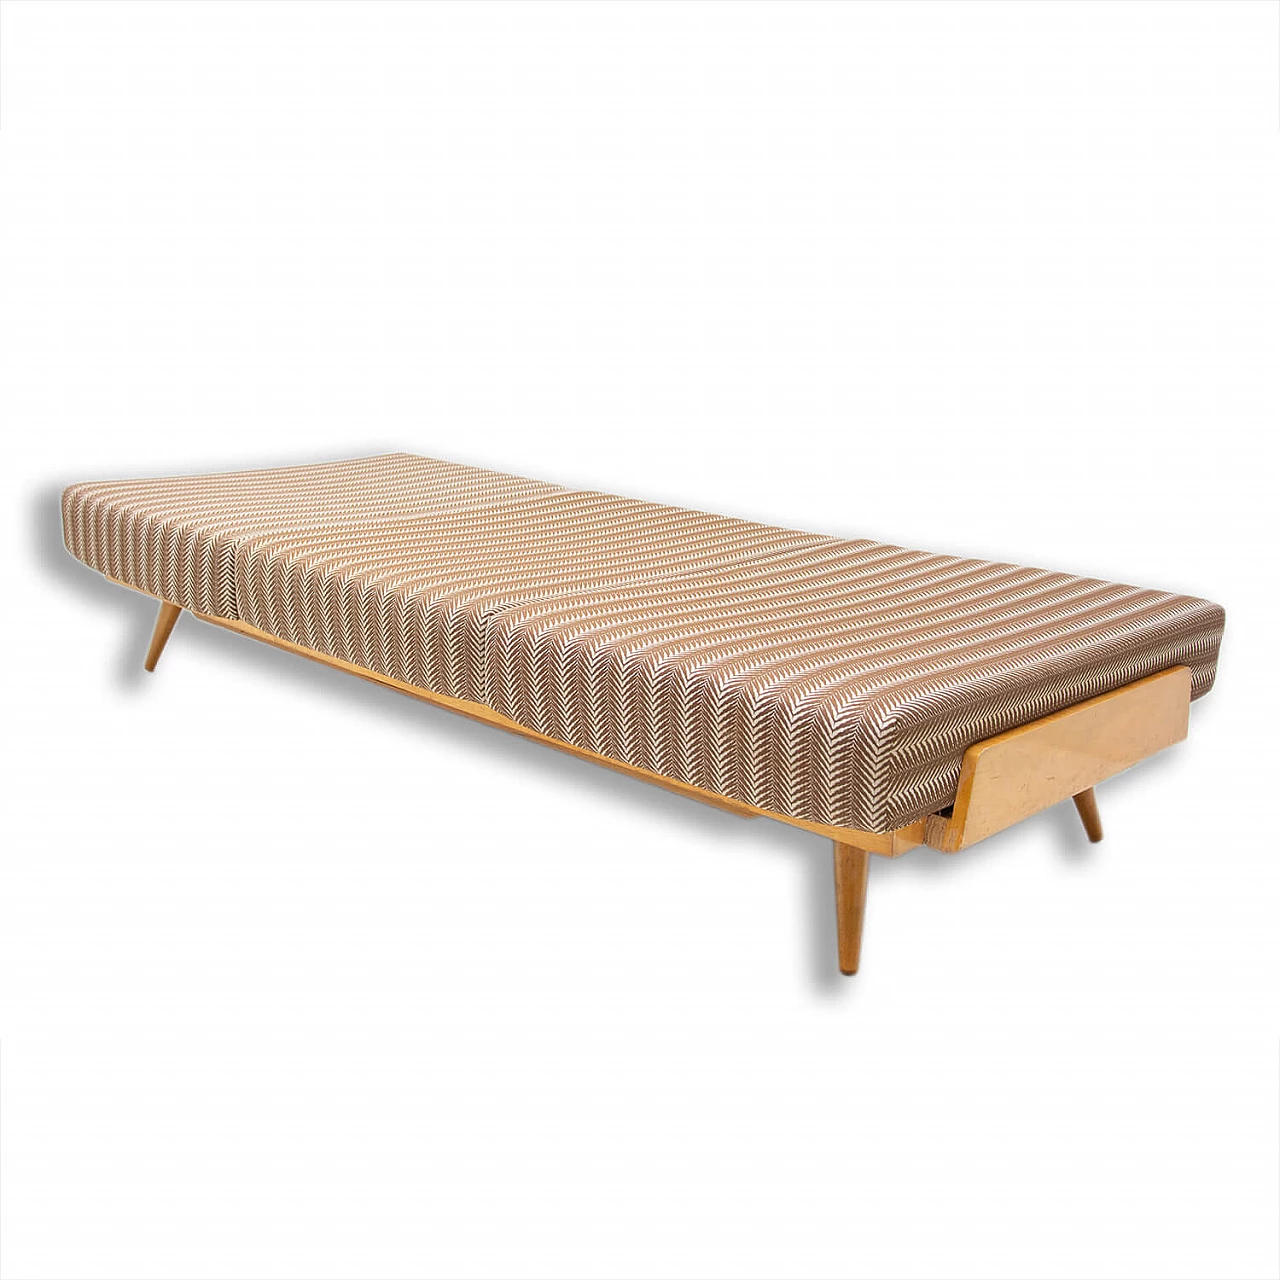 Single bed by František Jirák for Tatra furniture, 1970s 1477423